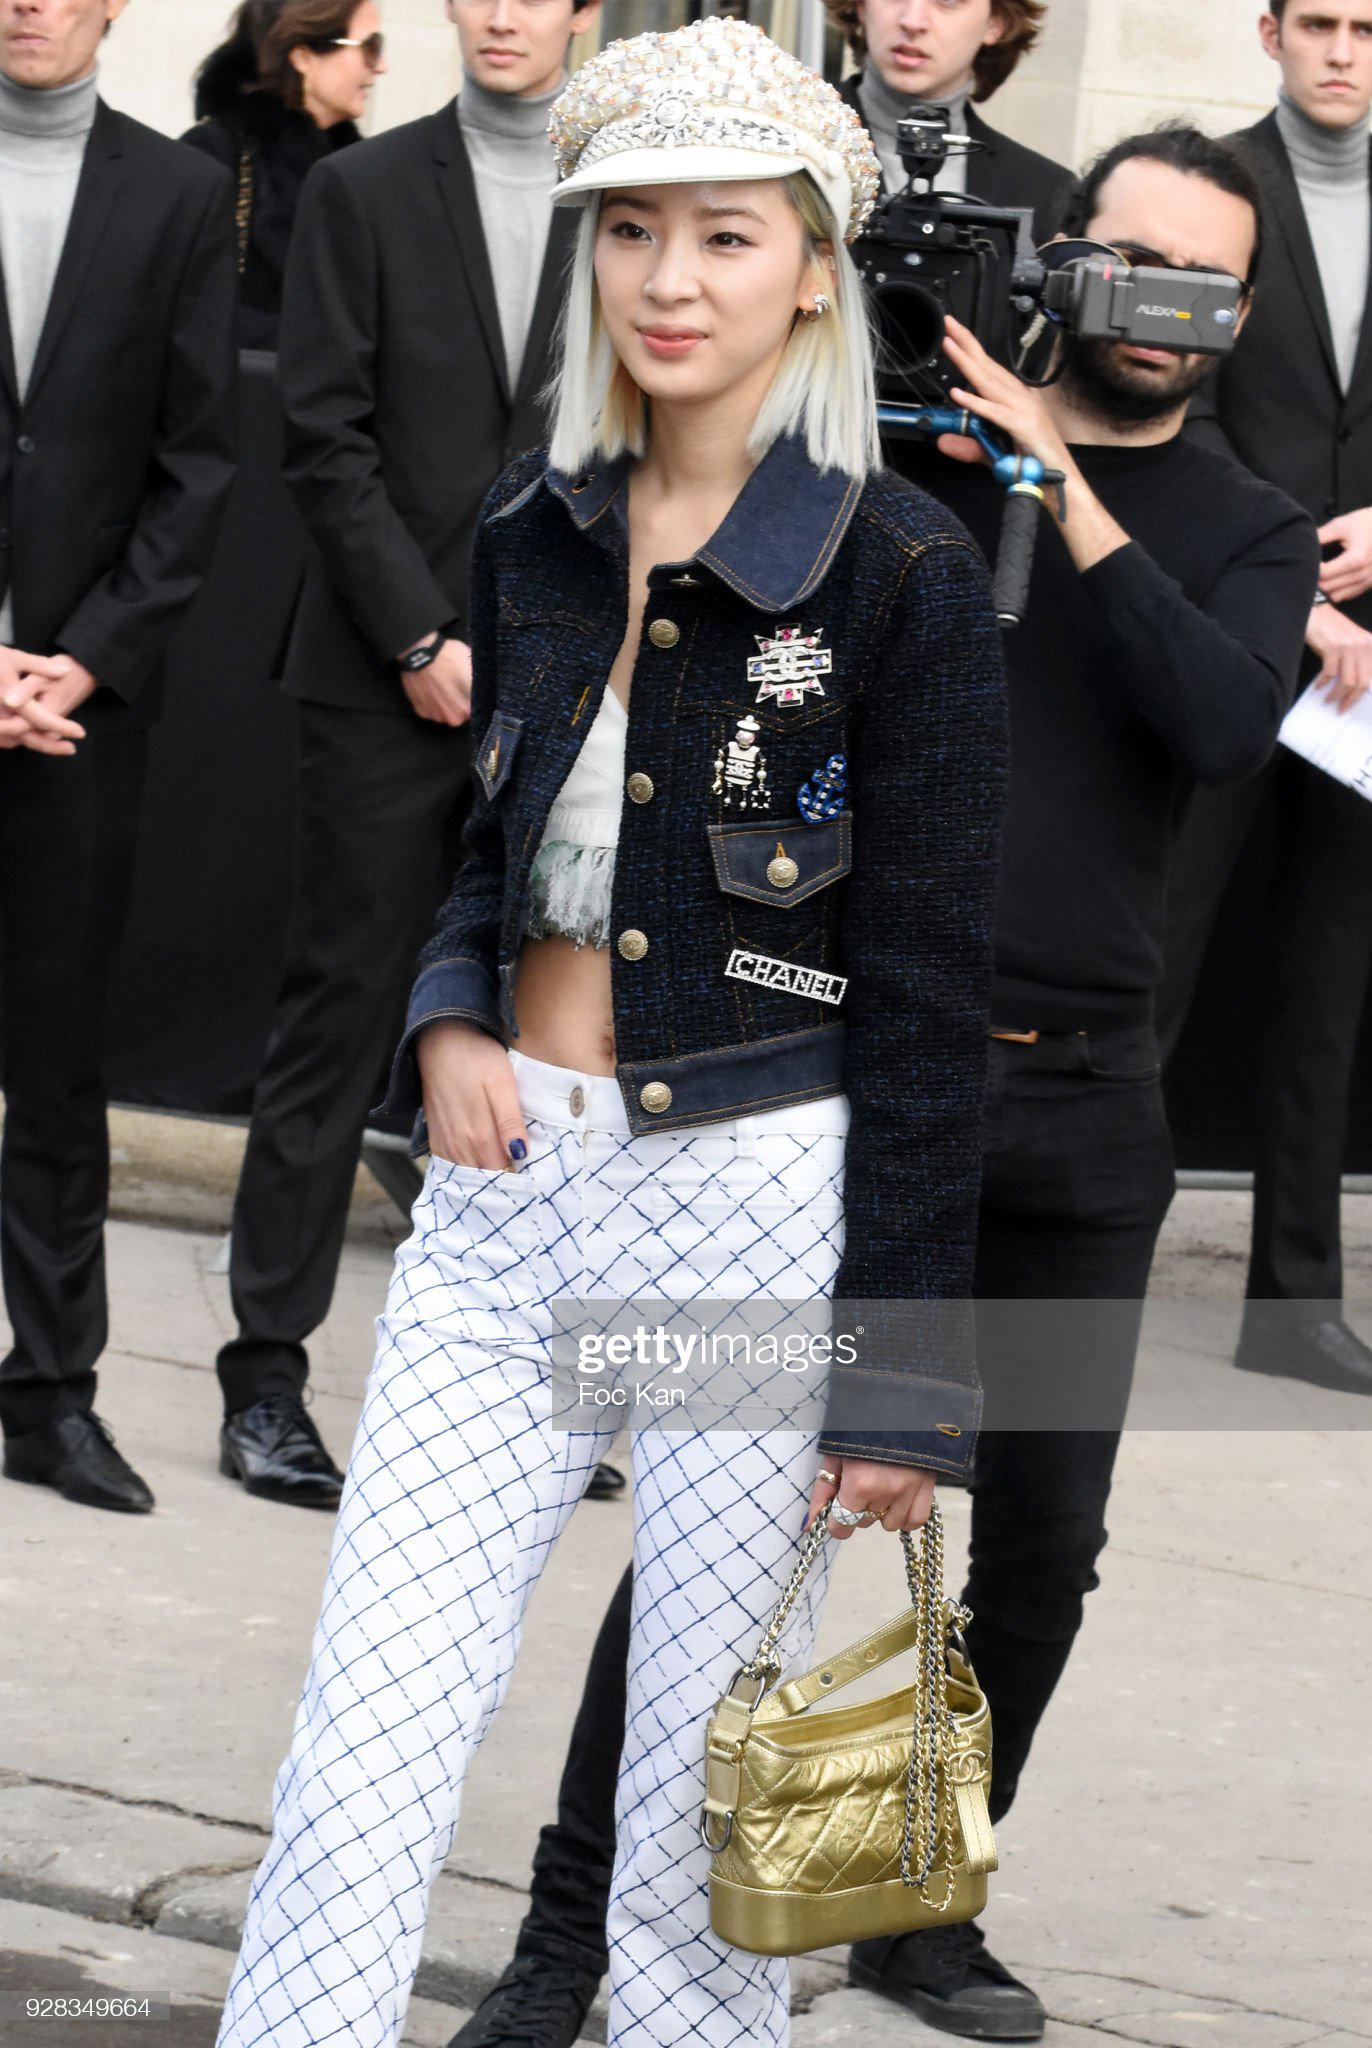 Ein Muss Chanel navy Lesage Tweed-Jacke aus Ad Campaigner der Frühjahrskollektion 2018.
Wie in den Kleiderschränken vieler Modeblogger und Influencer!
Größenbezeichnung 34 fr. Nie getragen
- aus atemberaubendem marineblauem und schwarzem